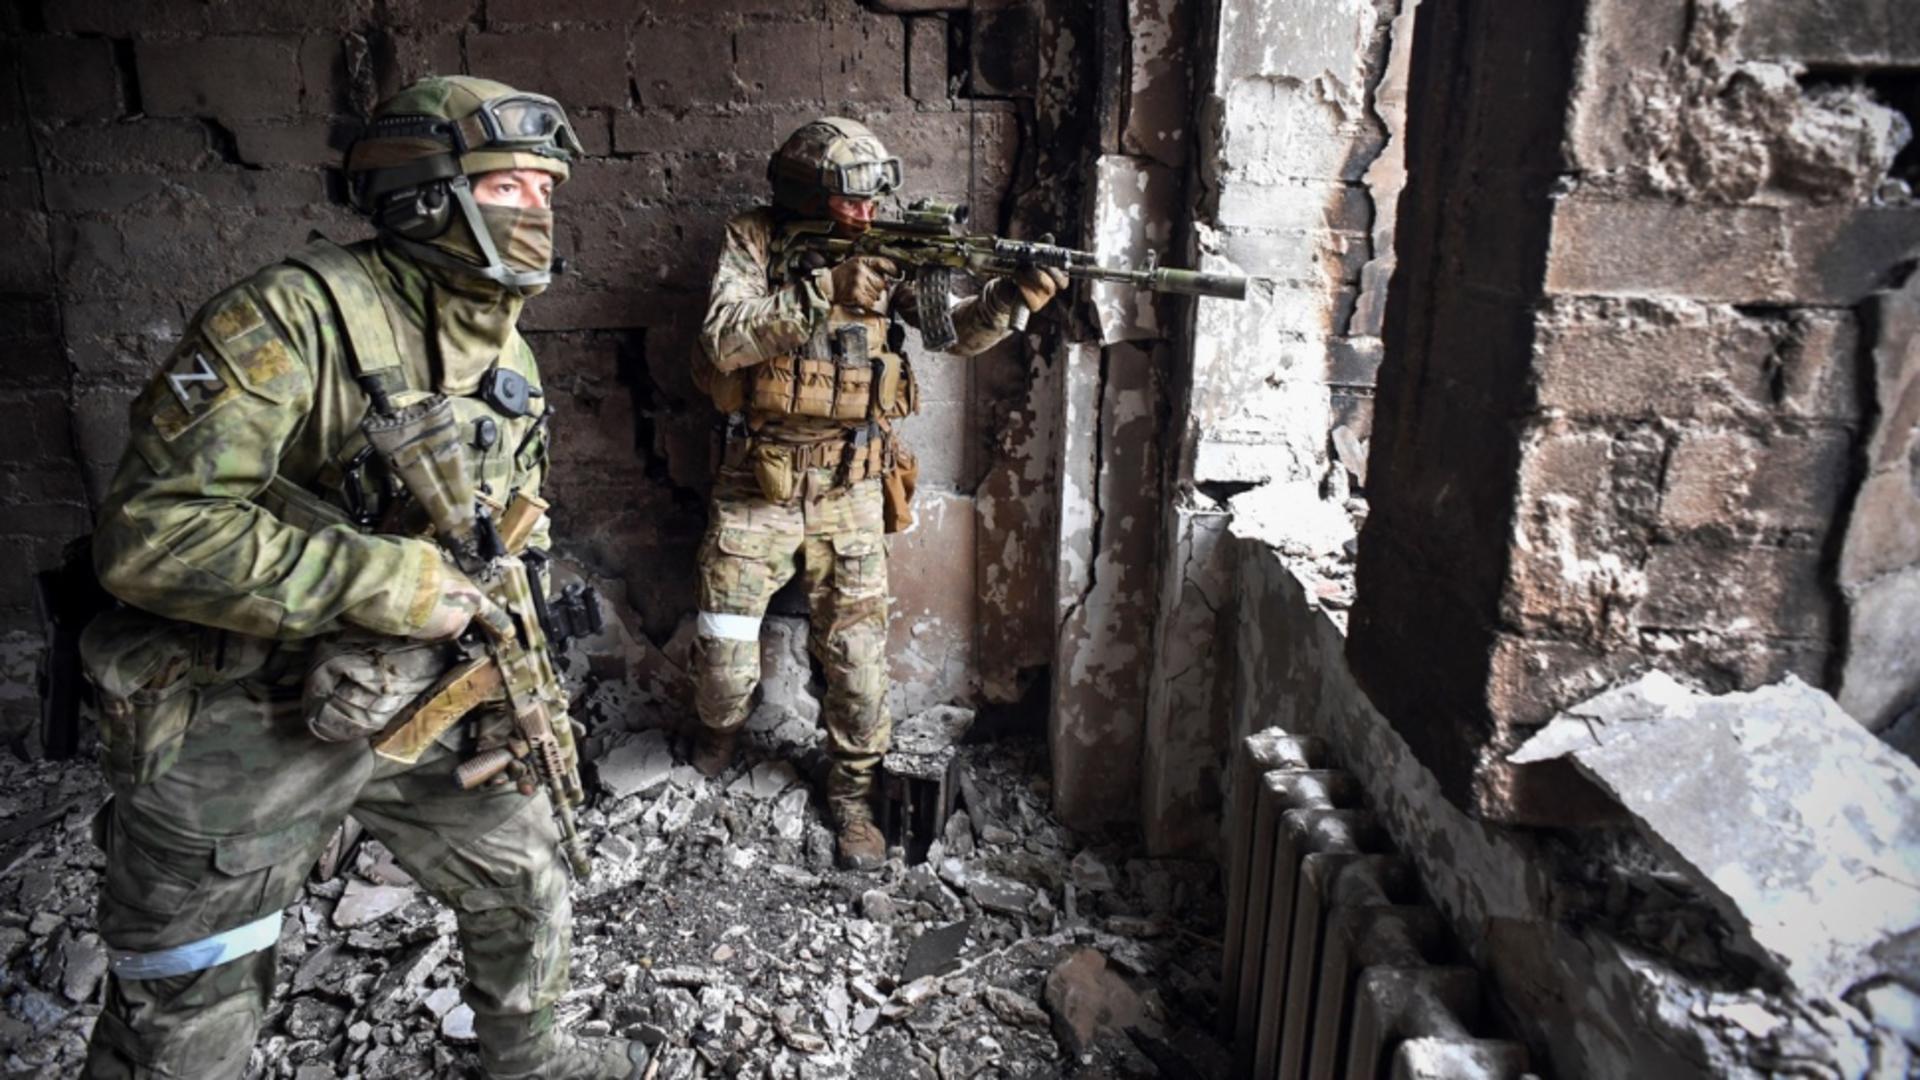 Război în Ucraina, ziua 521 - Foto: Profi Media